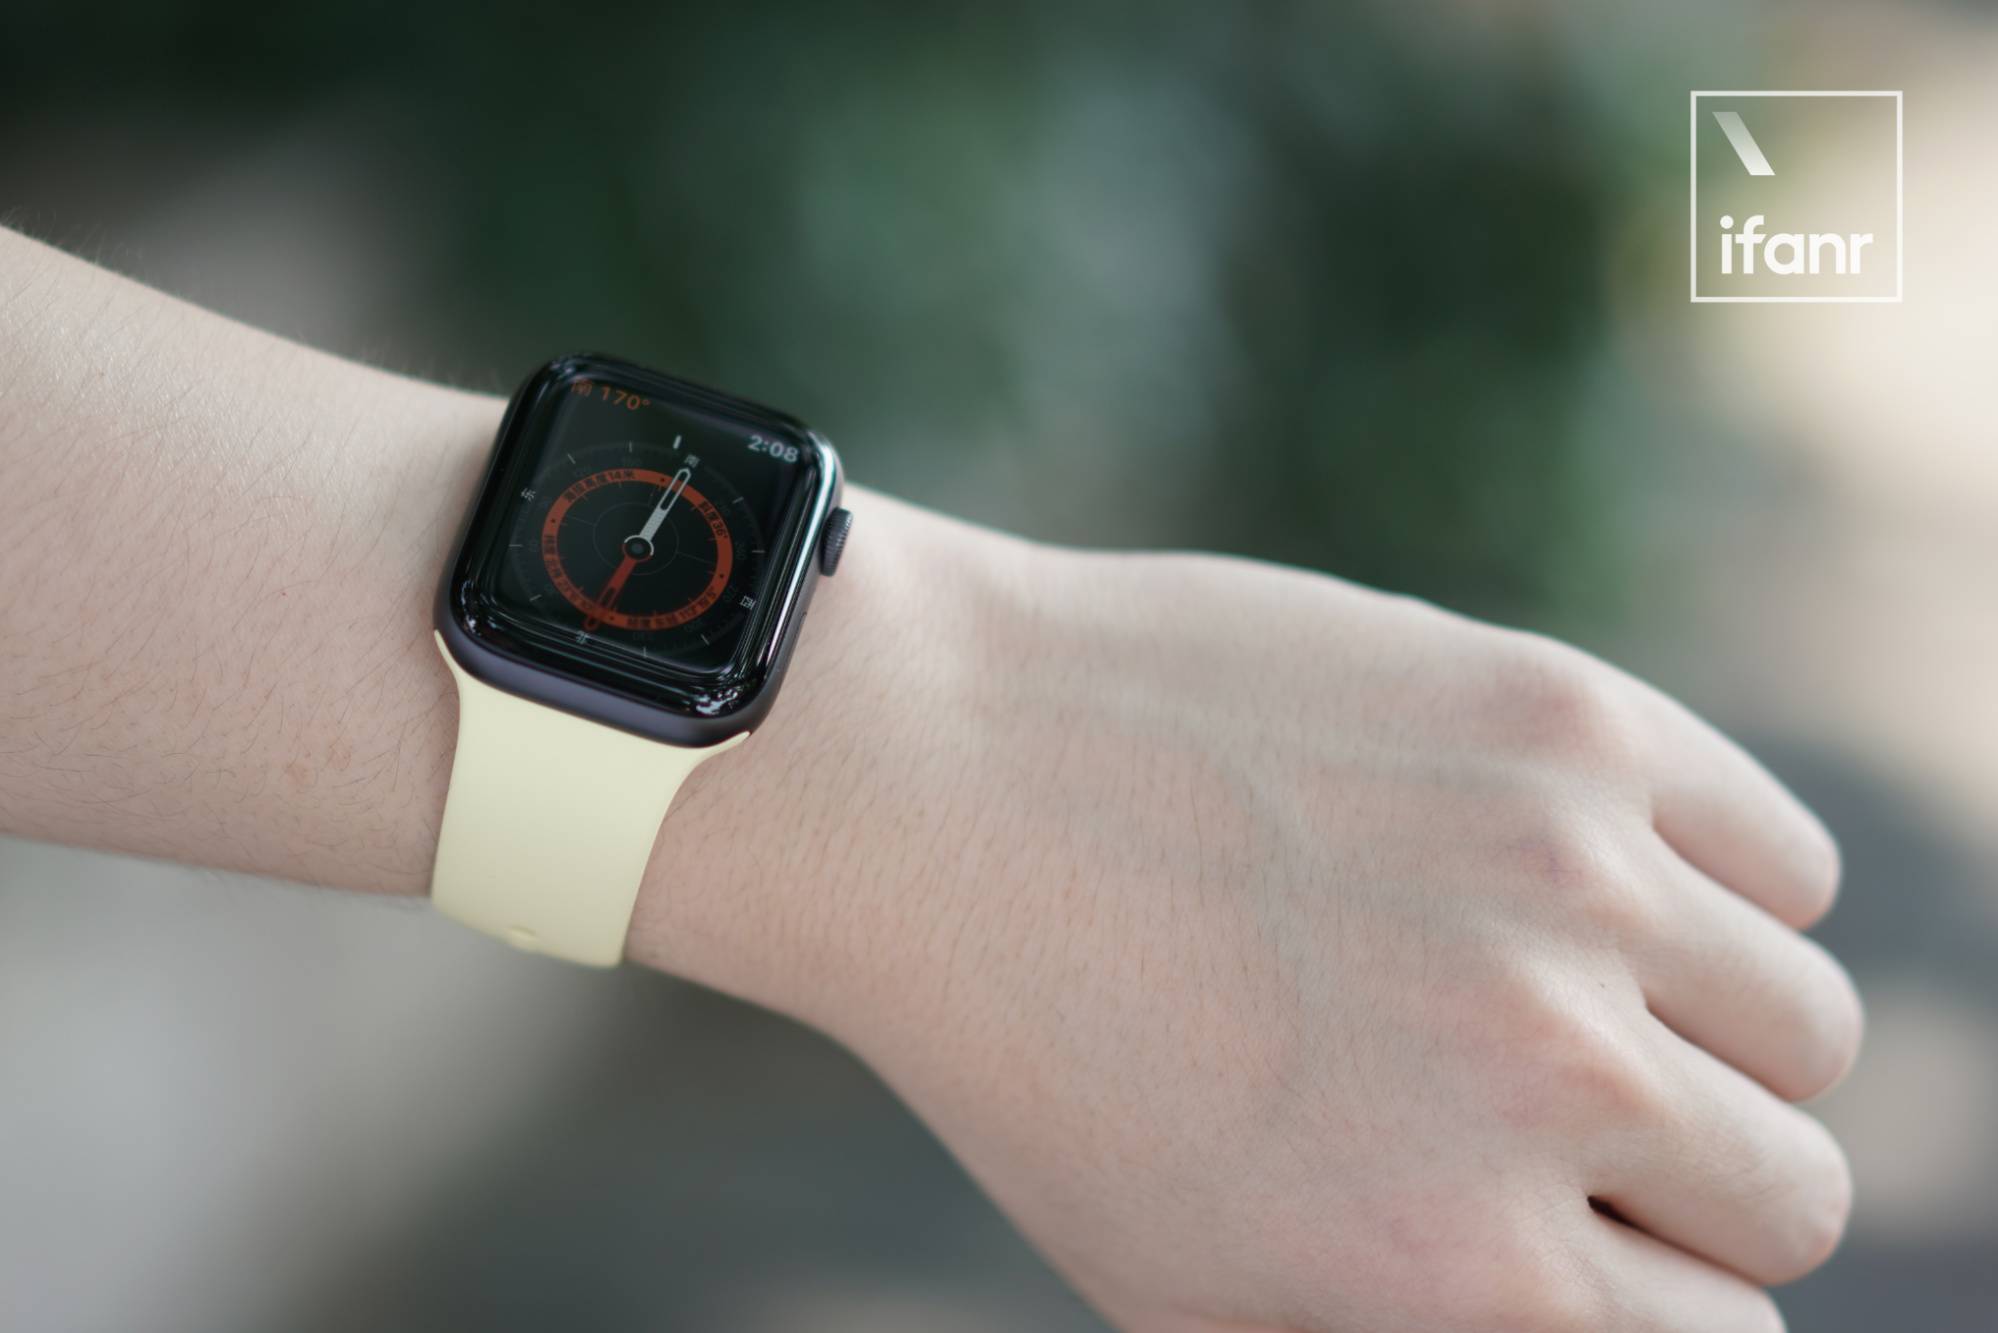 首发 Apple Watch Series 5 模范评测 苹果前进一小步 仍领先行业一大截 爱范儿